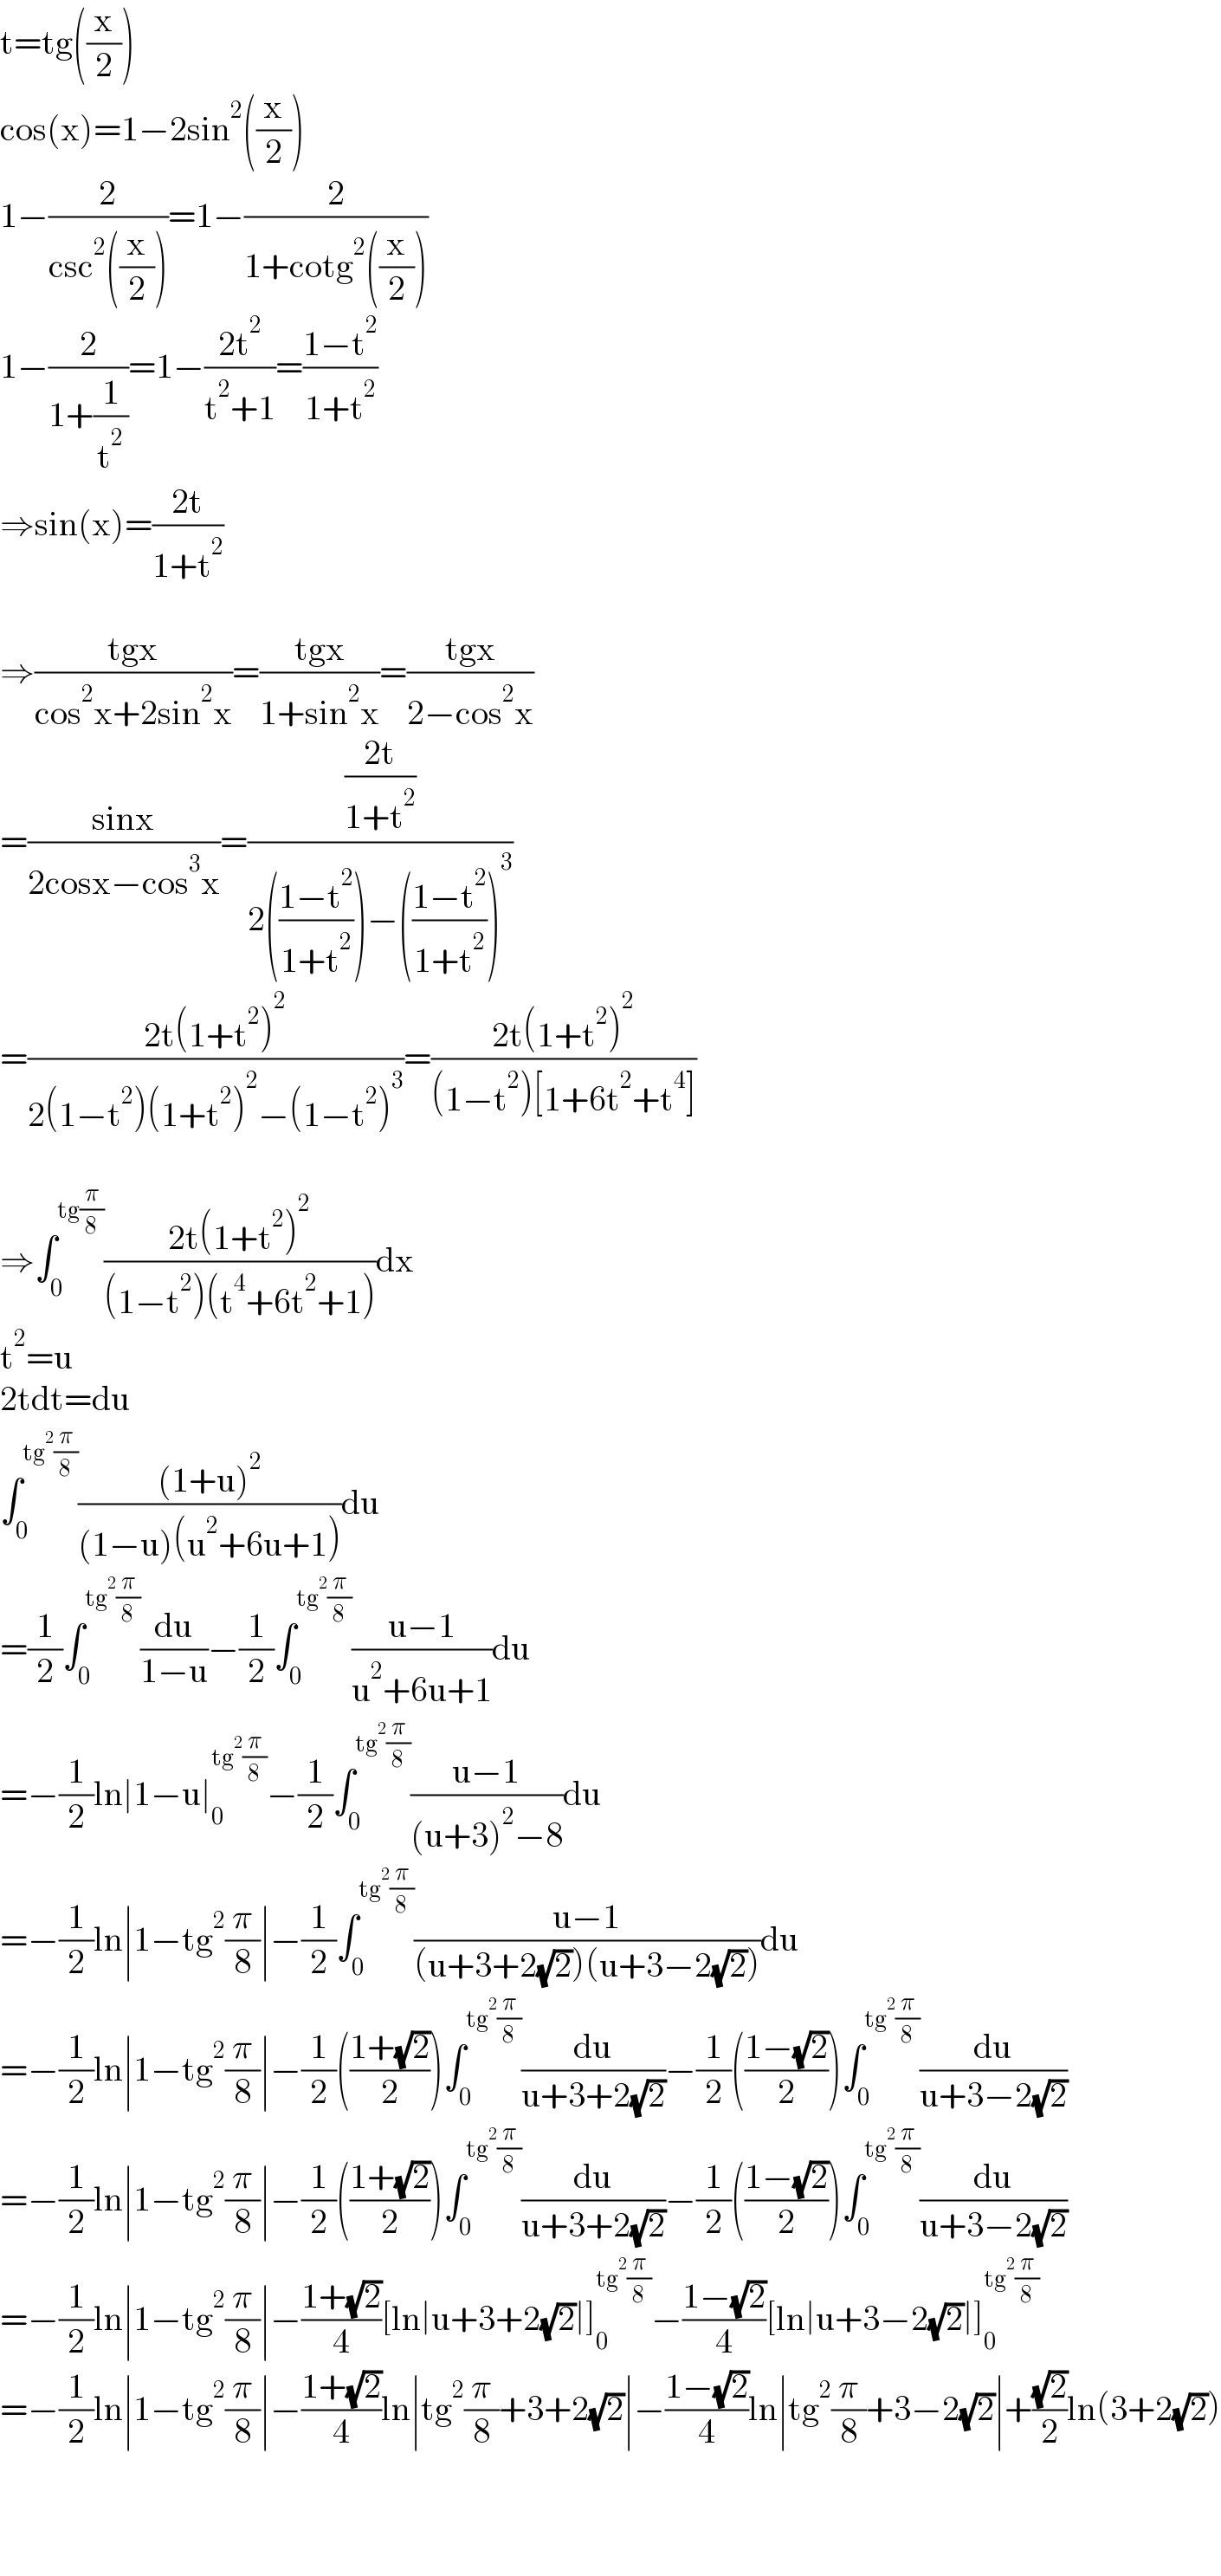 t=tg((x/2))  cos(x)=1−2sin^2 ((x/2))  1−(2/(csc^2 ((x/2))))=1−(2/(1+cotg^2 ((x/2))))  1−(2/(1+(1/t^2 )))=1−((2t^2 )/(t^2 +1))=((1−t^2 )/(1+t^2 ))  ⇒sin(x)=((2t)/(1+t^2 ))    ⇒((tgx)/(cos^2 x+2sin^2 x))=((tgx)/(1+sin^2 x))=((tgx)/(2−cos^2 x))  =((sinx)/(2cosx−cos^3 x))=(((2t)/(1+t^2 ))/(2(((1−t^2 )/(1+t^2 )))−(((1−t^2 )/(1+t^2 )))^3 ))  =((2t(1+t^2 )^2 )/(2(1−t^2 )(1+t^2 )^2 −(1−t^2 )^3 ))=((2t(1+t^2 )^2 )/((1−t^2 )[1+6t^2 +t^4 ]))    ⇒∫_0 ^(tg(π/8)) ((2t(1+t^2 )^2 )/((1−t^2 )(t^4 +6t^2 +1)))dx  t^2 =u  2tdt=du  ∫_0 ^(tg^2 (π/8)) (((1+u)^2 )/((1−u)(u^2 +6u+1)))du  =(1/2)∫_0 ^(tg^2 (π/8)) (du/(1−u))−(1/2)∫_0 ^(tg^2 (π/8)) ((u−1)/(u^2 +6u+1))du  =−(1/2)ln∣1−u∣_0 ^(tg^2 (π/8)) −(1/2)∫_0 ^(tg^2 (π/8)) ((u−1)/((u+3)^2 −8))du  =−(1/2)ln∣1−tg^2 (π/8)∣−(1/2)∫_0 ^(tg^2 (π/8)) ((u−1)/((u+3+2(√2))(u+3−2(√2))))du  =−(1/2)ln∣1−tg^2 (π/8)∣−(1/2)(((1+(√2))/2))∫_0 ^(tg^2 (π/8)) (du/(u+3+2(√2)))−(1/2)(((1−(√2))/2))∫_0 ^(tg^2 (π/8)) (du/(u+3−2(√2)))  =−(1/2)ln∣1−tg^2 (π/8)∣−(1/2)(((1+(√2))/2))∫_0 ^(tg^2 (π/8)) (du/(u+3+2(√2)))−(1/2)(((1−(√2))/2))∫_0 ^(tg^2 (π/8)) (du/(u+3−2(√2)))  =−(1/2)ln∣1−tg^2 (π/8)∣−((1+(√2))/4)[ln∣u+3+2(√2)∣]_0 ^(tg^2 (π/8)) −((1−(√2))/4)[ln∣u+3−2(√2)∣]_0 ^(tg^2 (π/8))   =−(1/2)ln∣1−tg^2 (π/8)∣−((1+(√2))/4)ln∣tg^2 (π/8)+3+2(√2)∣−((1−(√2))/4)ln∣tg^2 (π/8)+3−2(√2)∣+((√2)/2)ln(3+2(√2))      